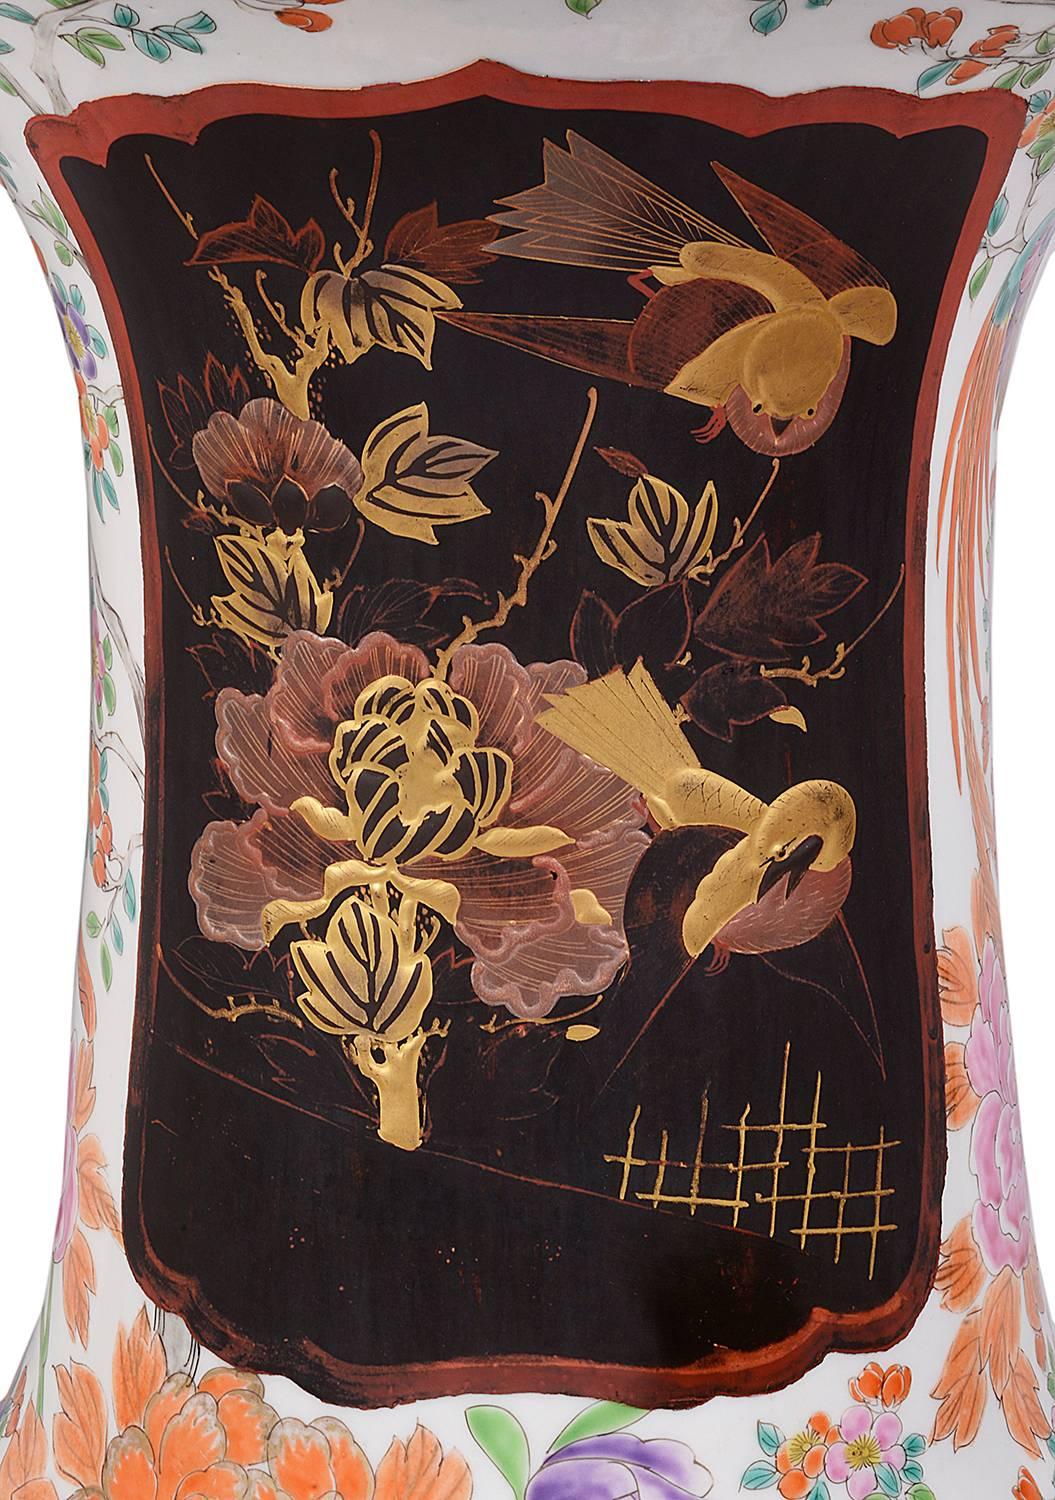 Paire de grands vases japonais Arita à col évasé du 19e siècle, de bonne qualité, chacun avec des panneaux laqués représentant des scènes de deux jeunes filles dans un jardin, entourées d'oiseaux et de fleurs.